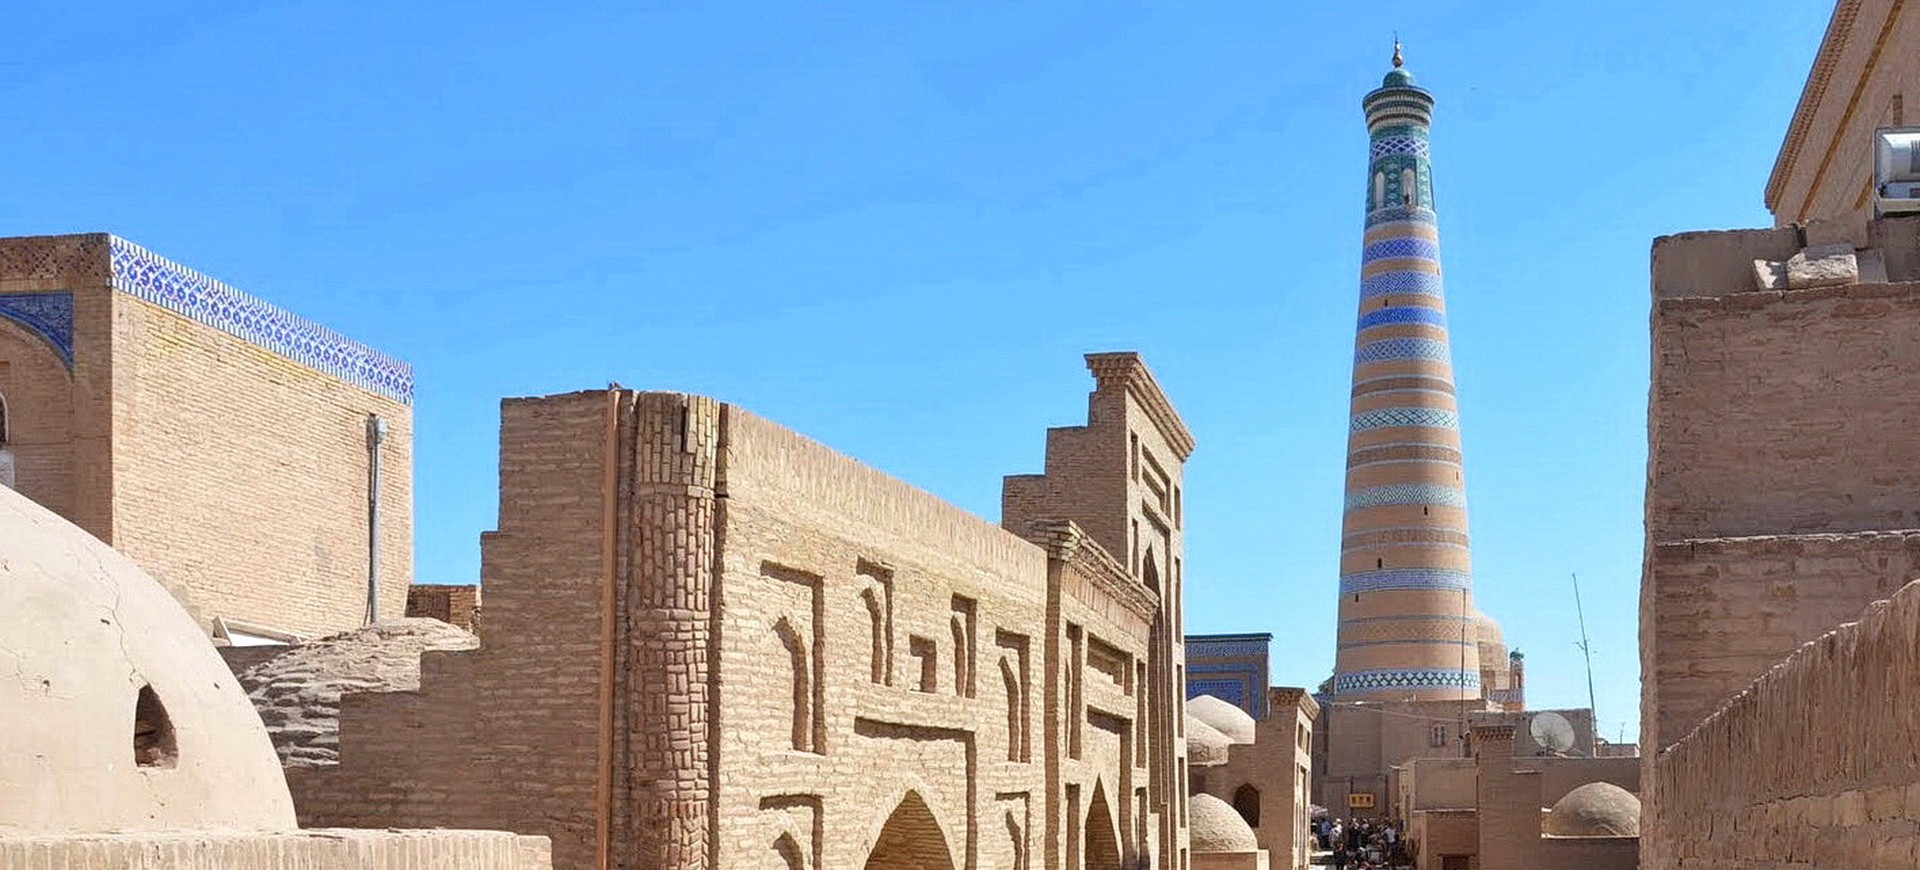 Ouzbékistan Khiva